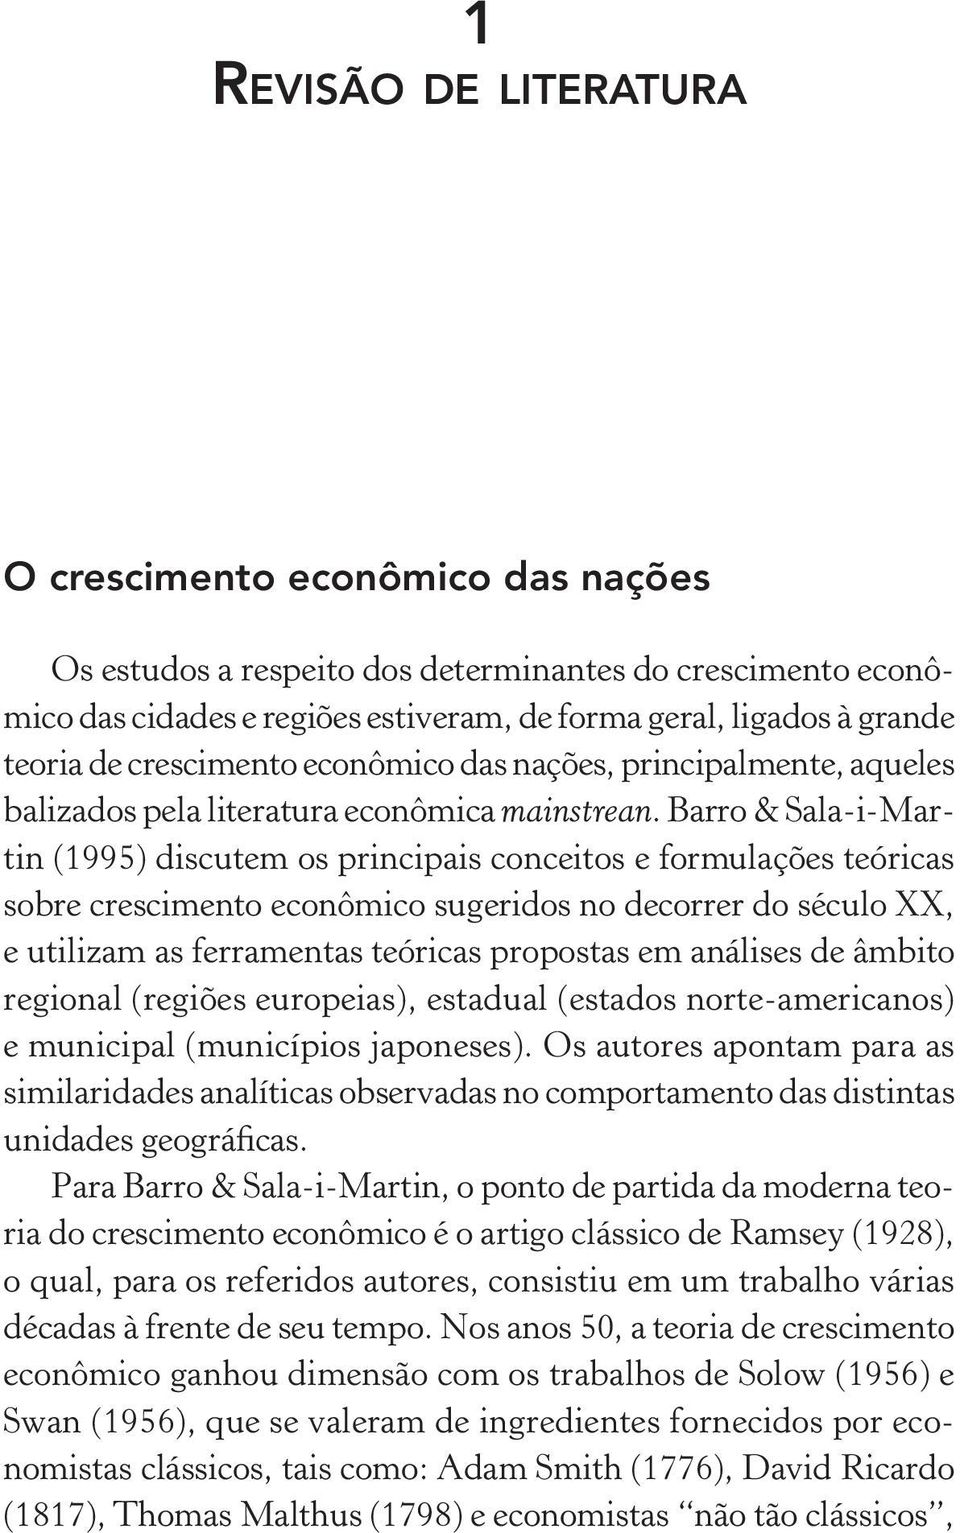 Barro & Sala-i-Martin (1995) discutem os principais conceitos e formulações teóricas sobre crescimento econômico sugeridos no decorrer do século XX, e utilizam as ferramentas teóricas propostas em